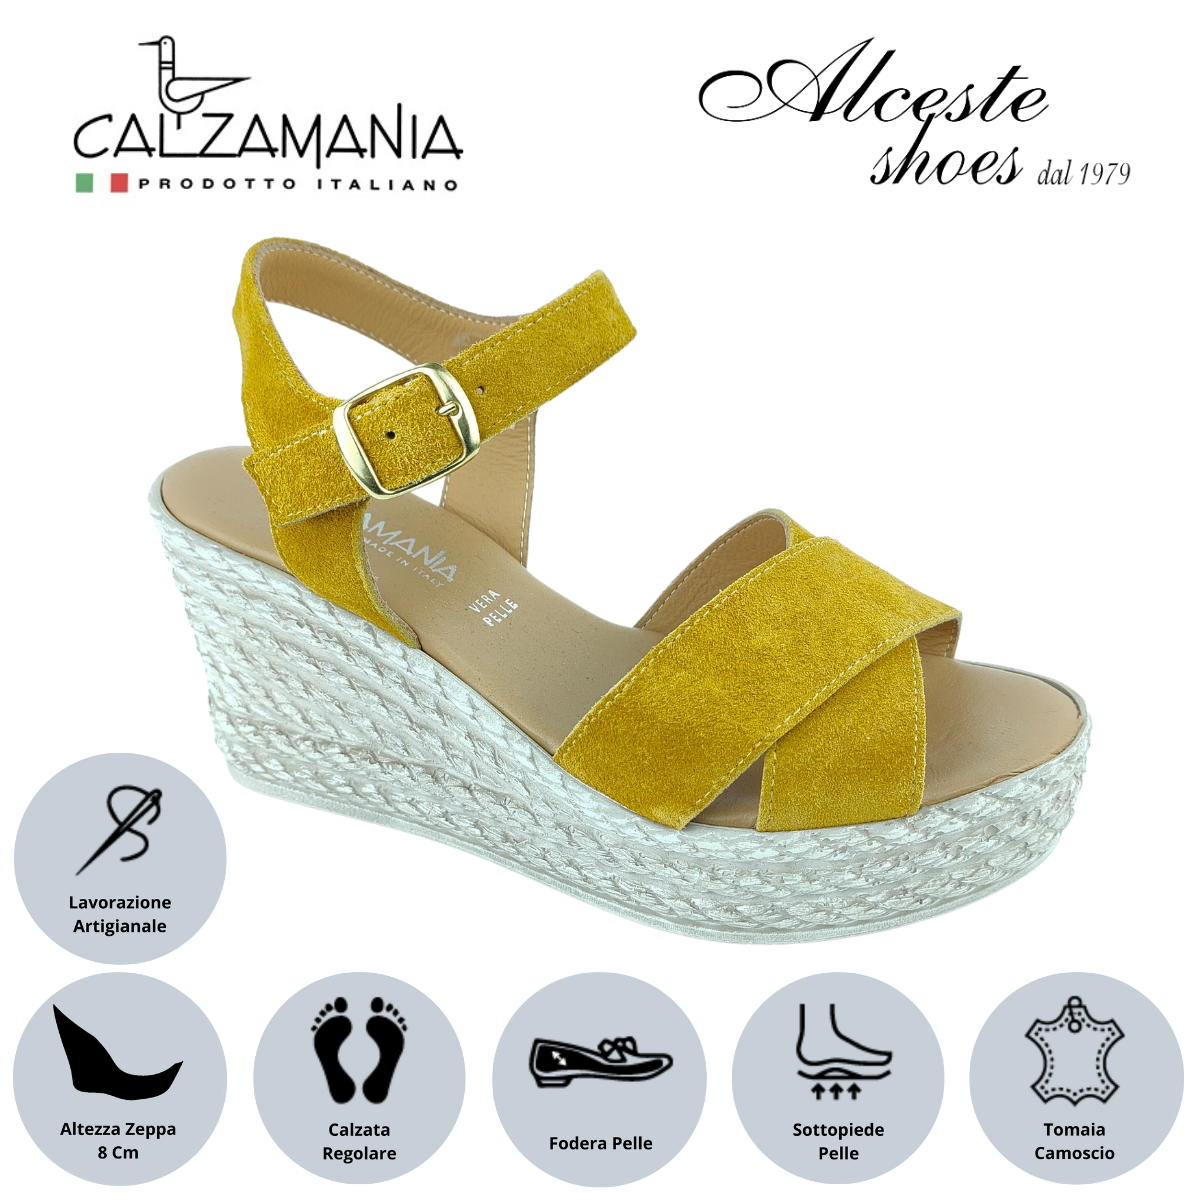 Sandalo con Zeppa "Calzamania" Art. 3037 Camoscio Giallo Ocra Alceste Shoes 4 9